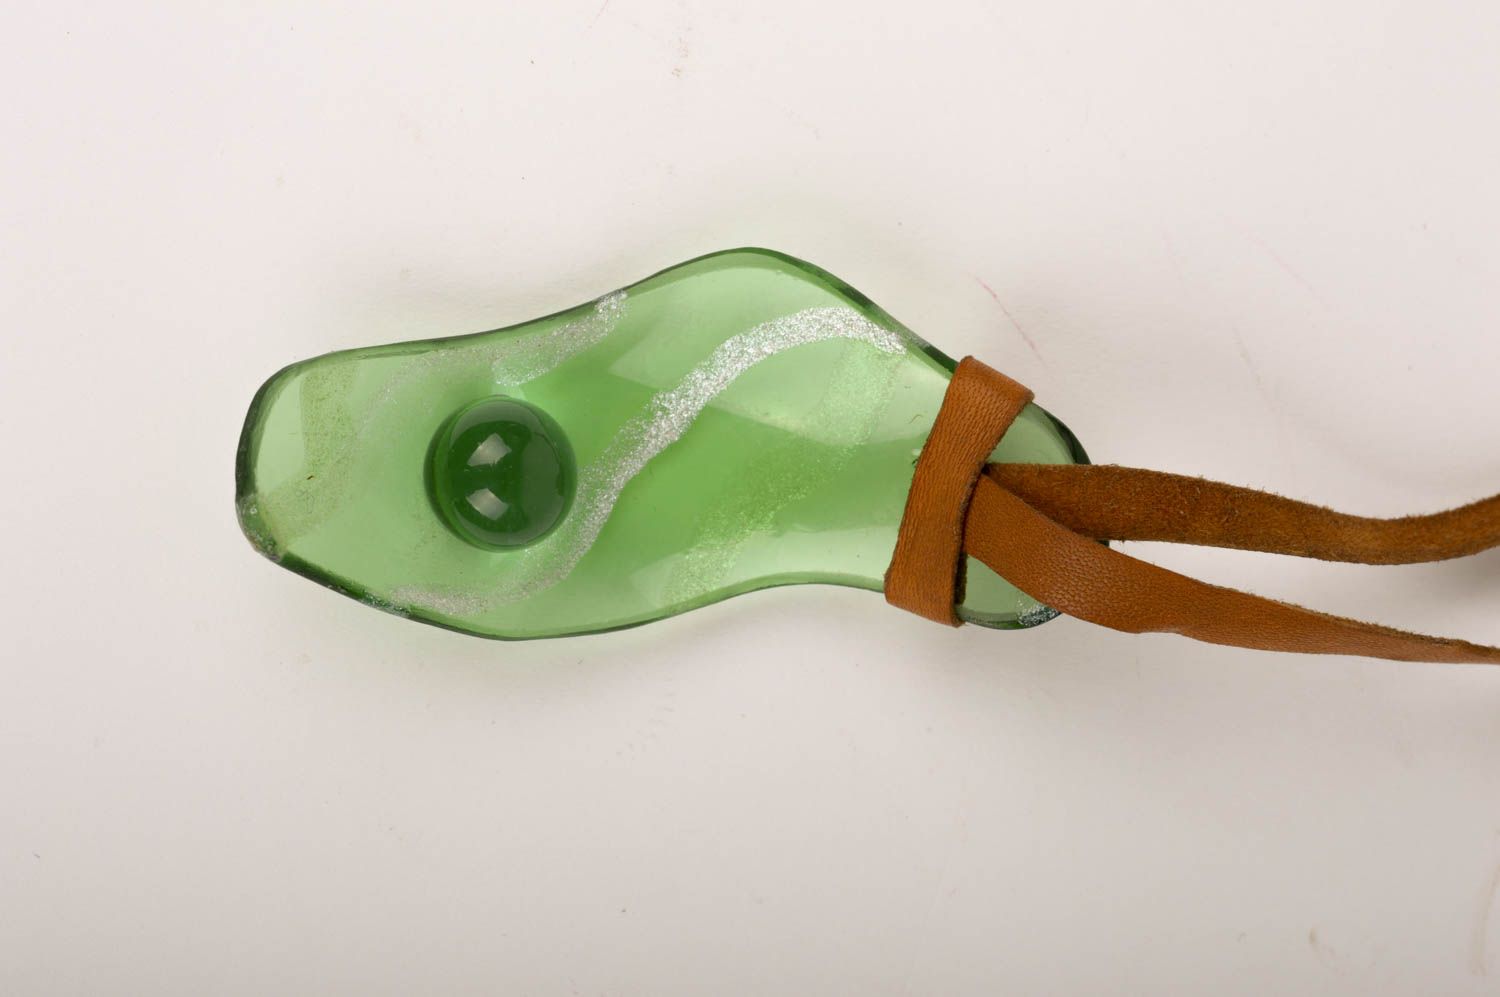 Кулон на шнурке ручной работы стеклянный кулон зеленый украшение из стекла фото 2